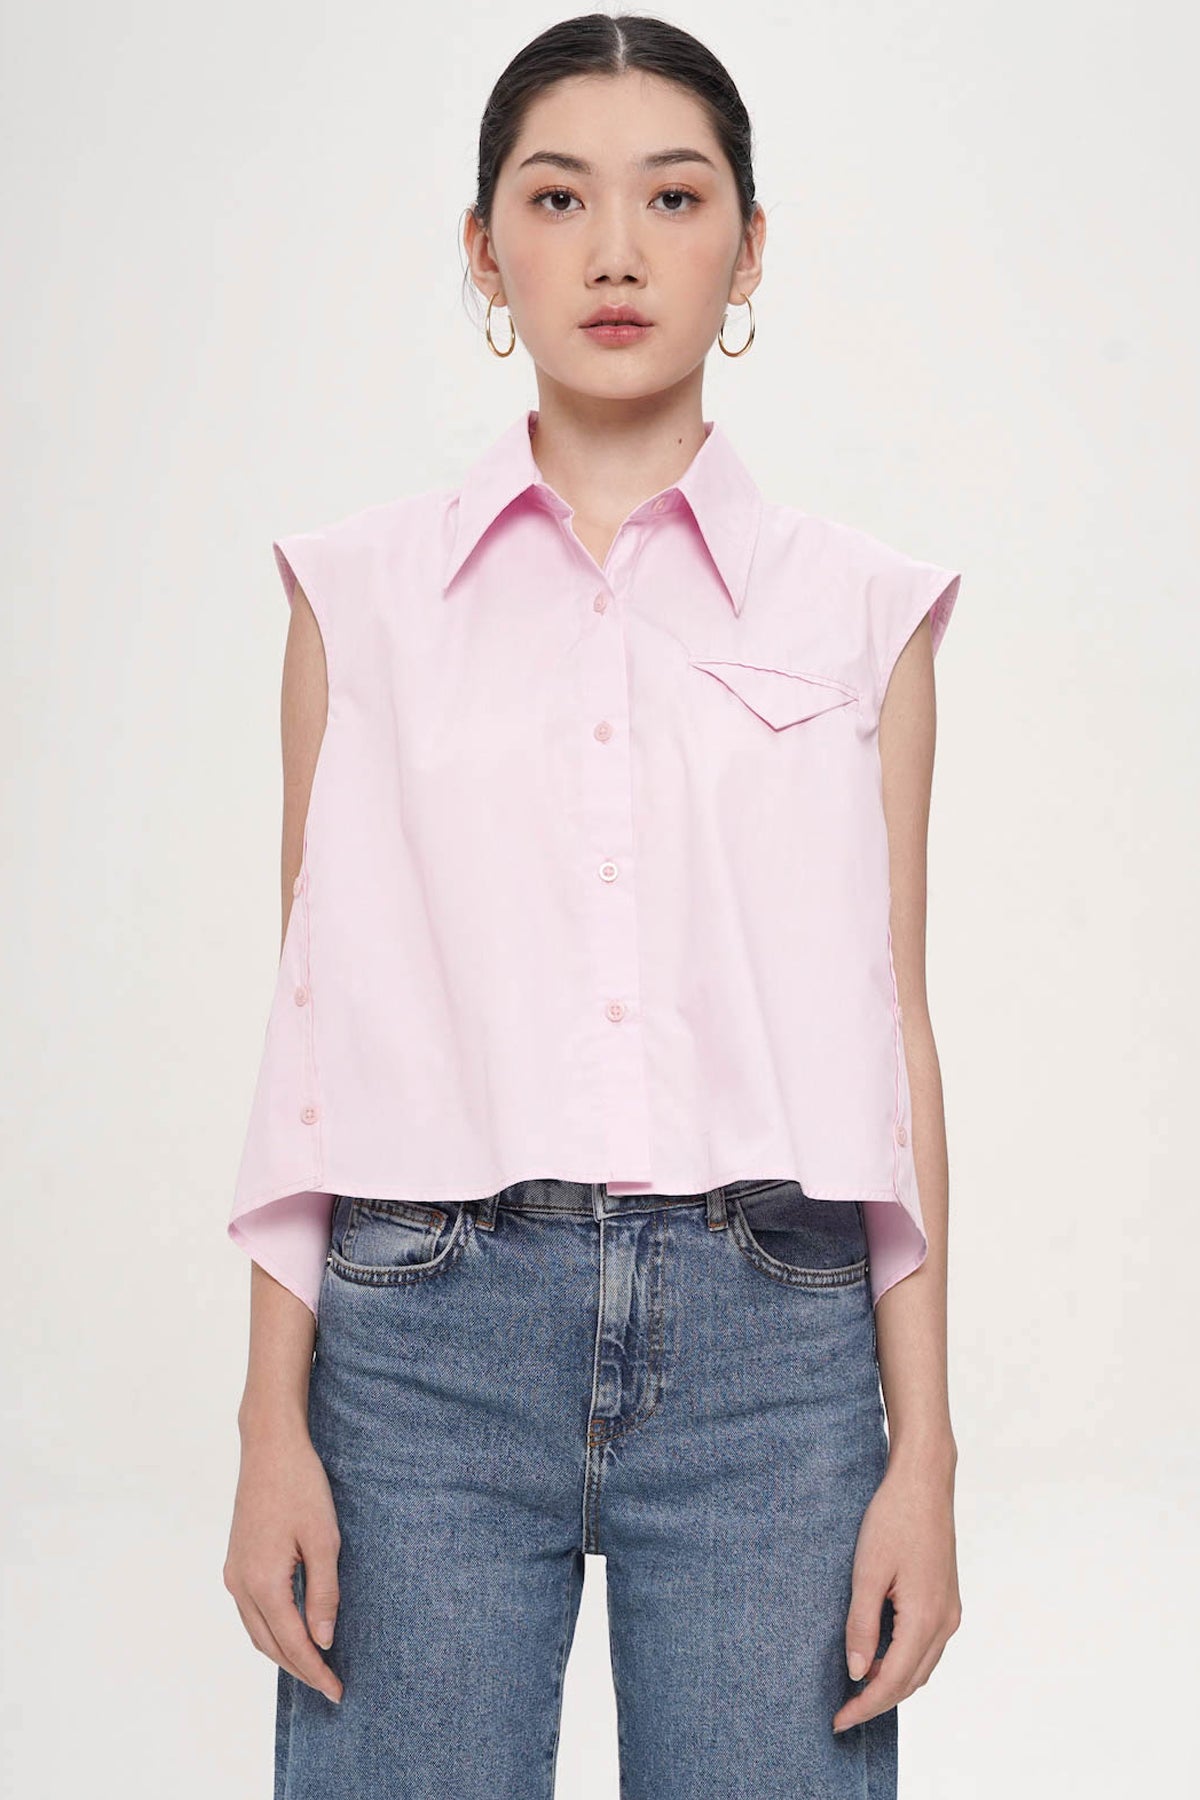 Tripline Pocket Shirt in Pink